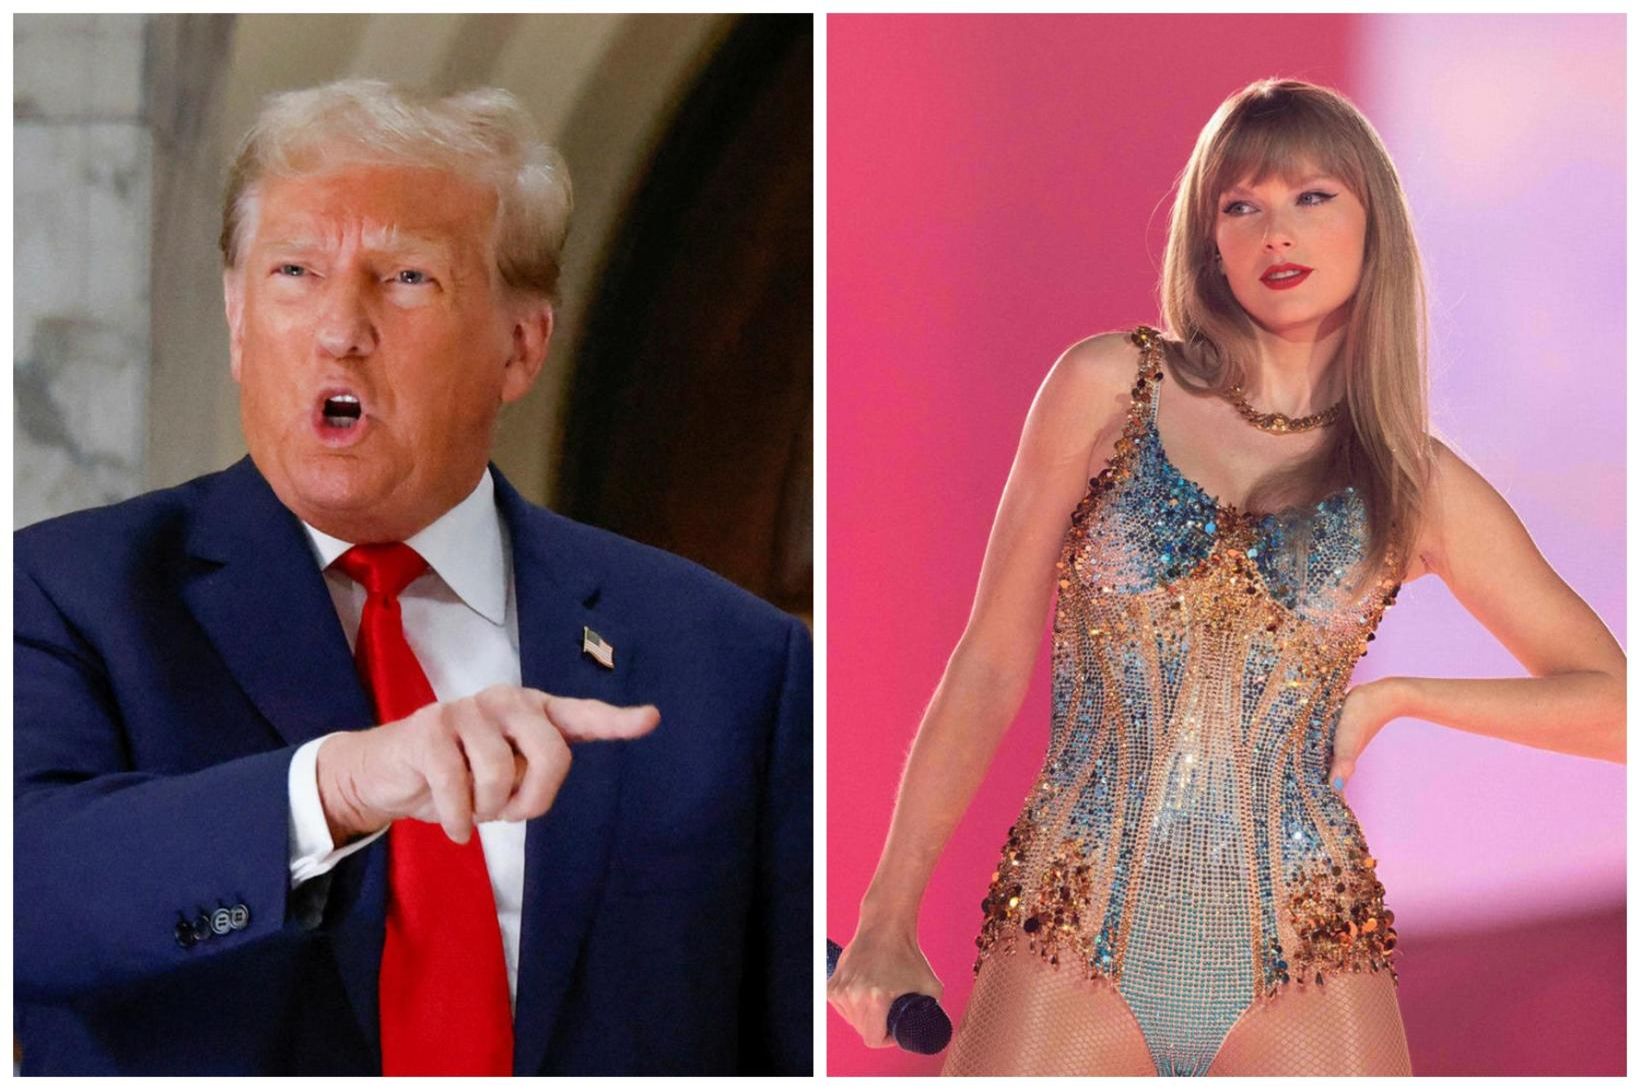 Trump segir Swift vera „óvenju fallega“ en „frjálslynda“